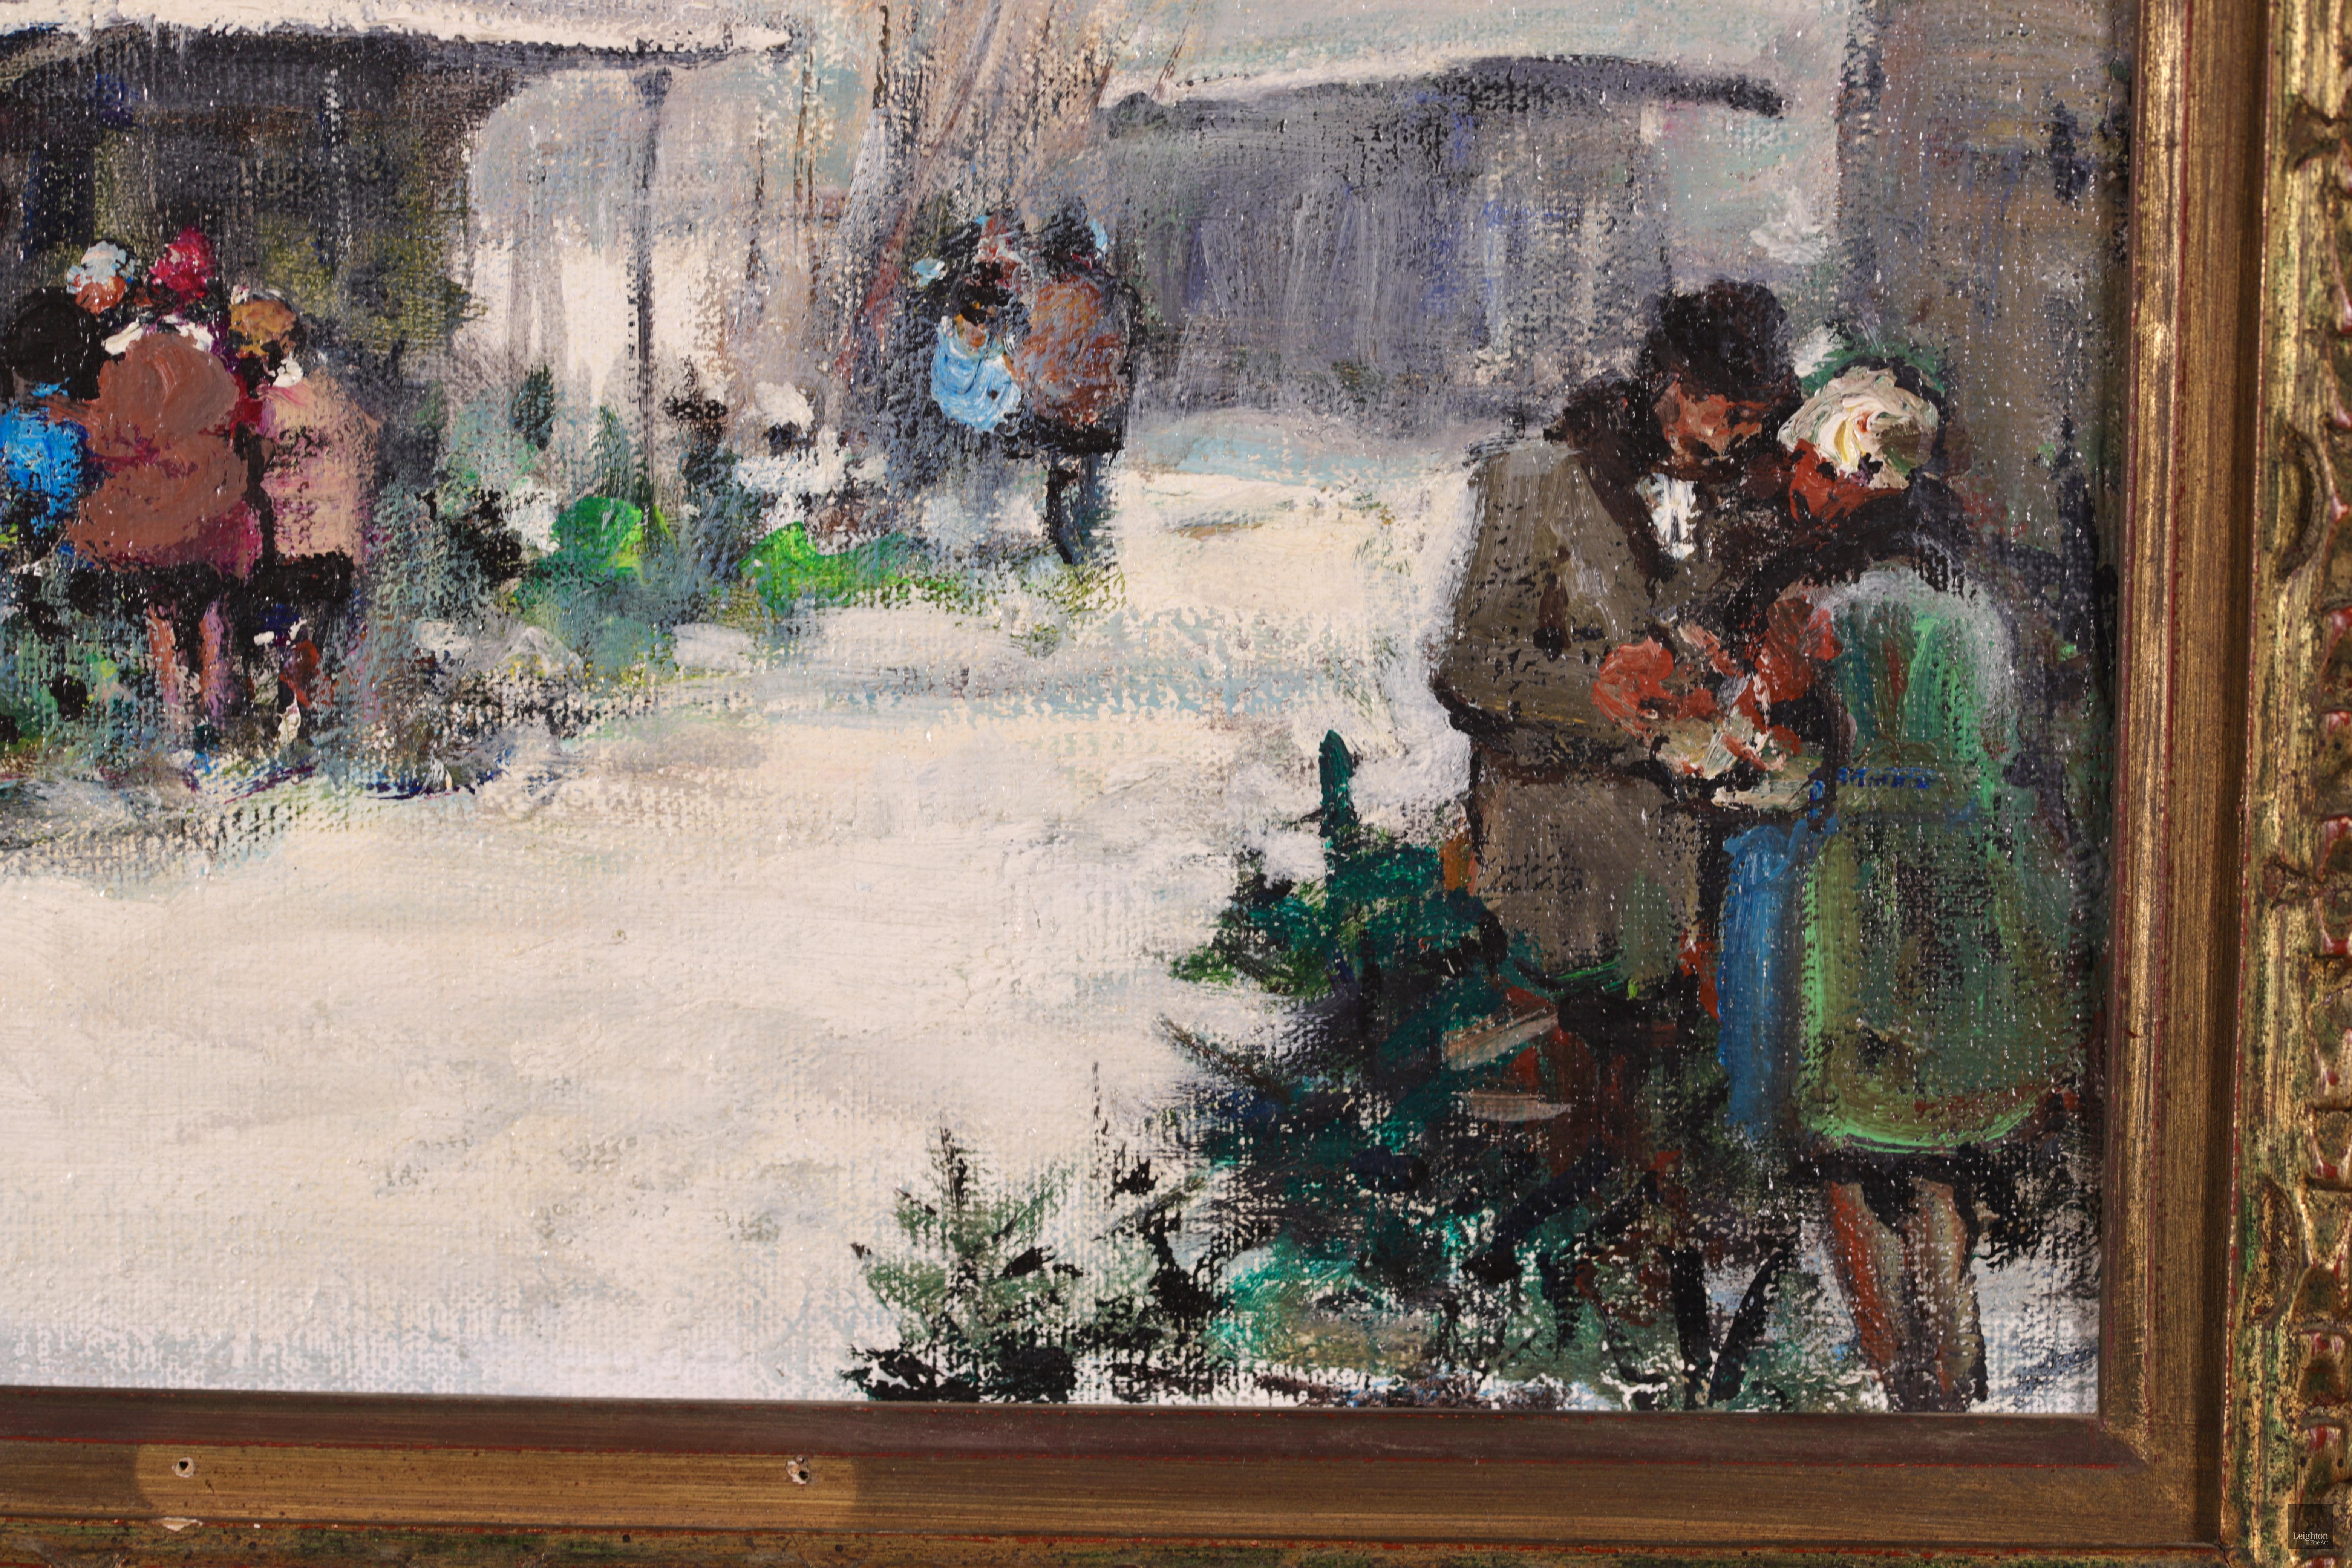 Paysage figuratif impressionniste signé, huile sur toile vers 1950 du peintre français Jules René Hervé. Le paysage hivernal montre un marché aux arbres de Noël avec des clients et des exposants réunis autour de leurs cabanes en bois. Le vert vif